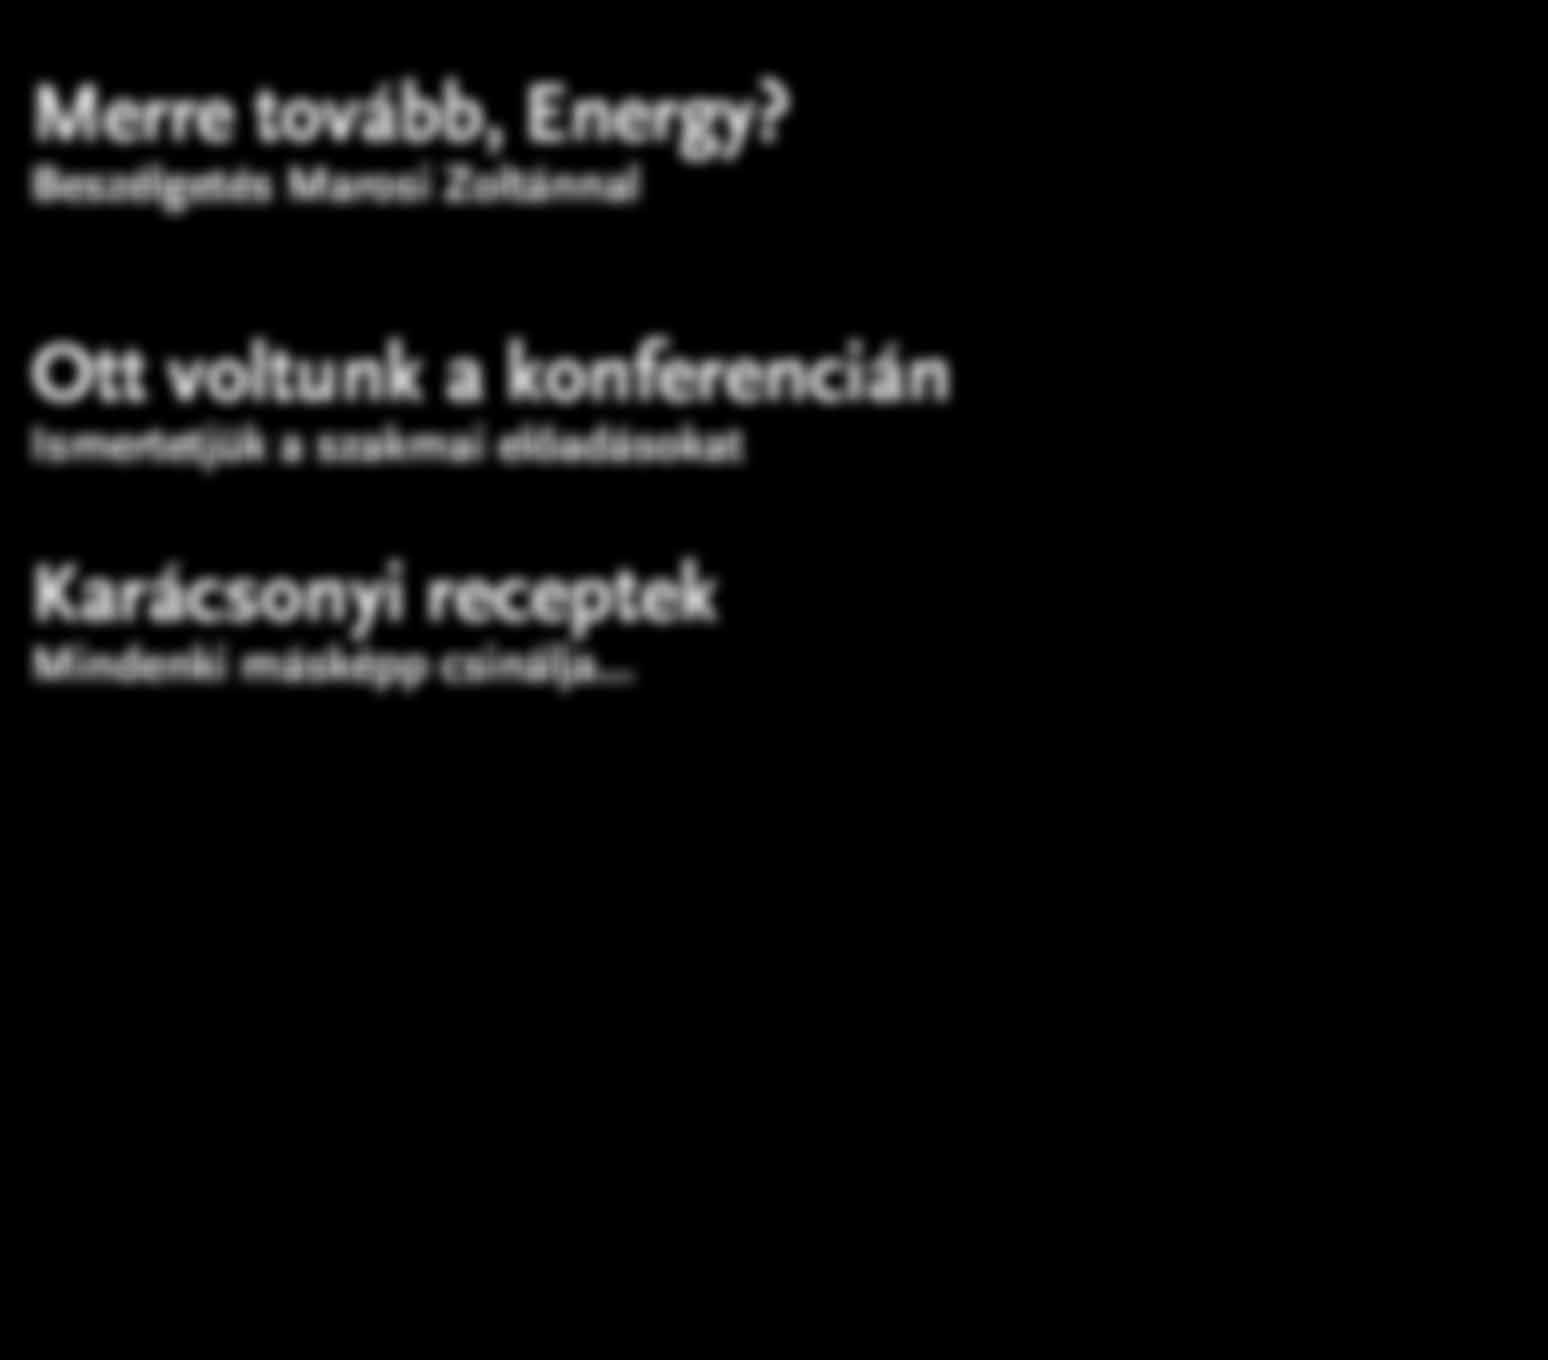 2012/12 2013/1 www.energy.sk Merre tovább, Energy?